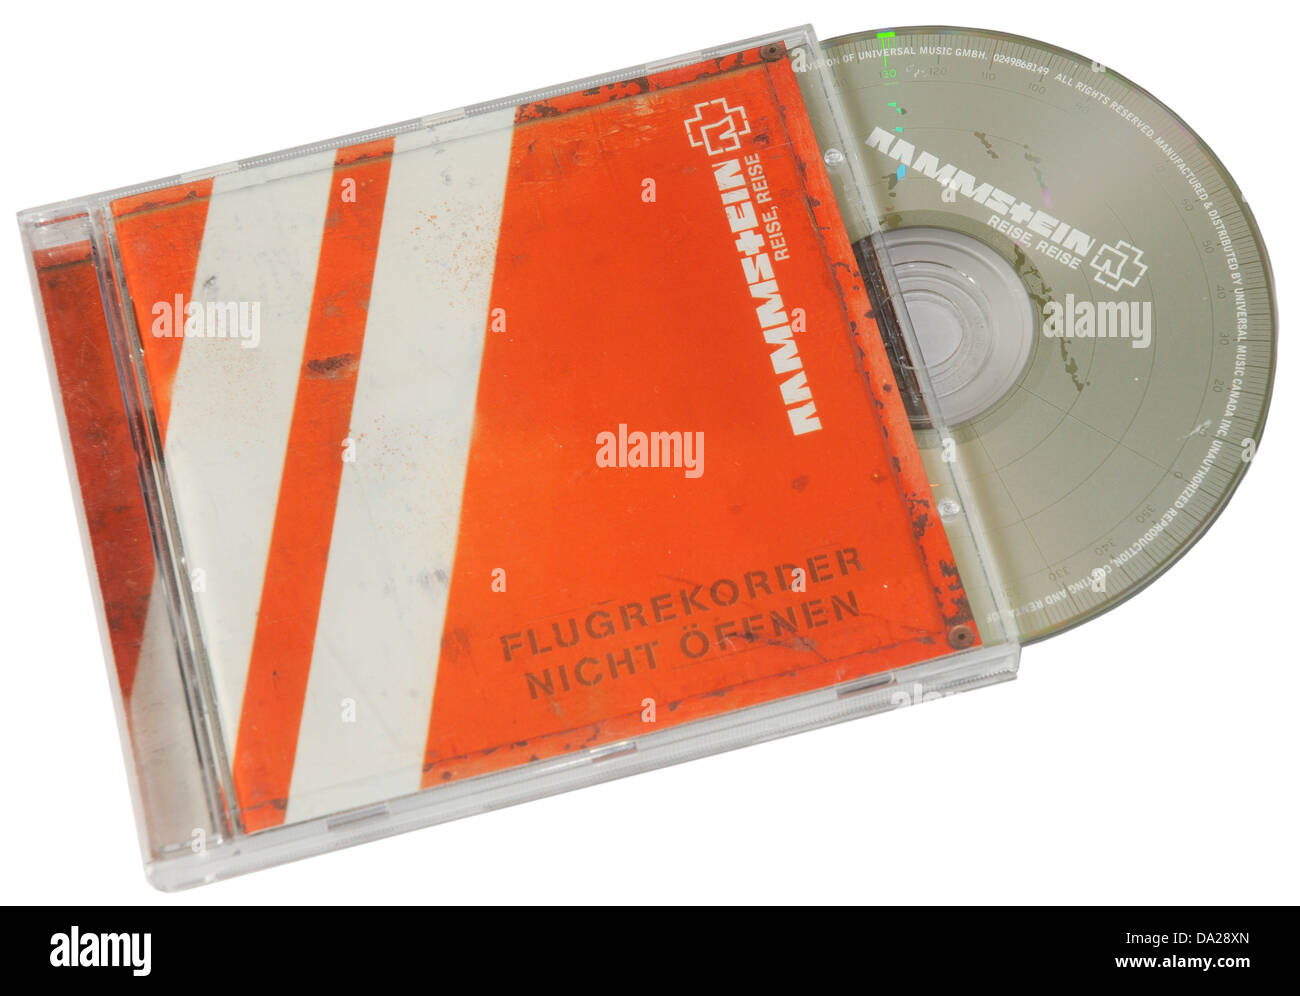 Rammstein Reise Reise album sur CD Photo Stock - Alamy